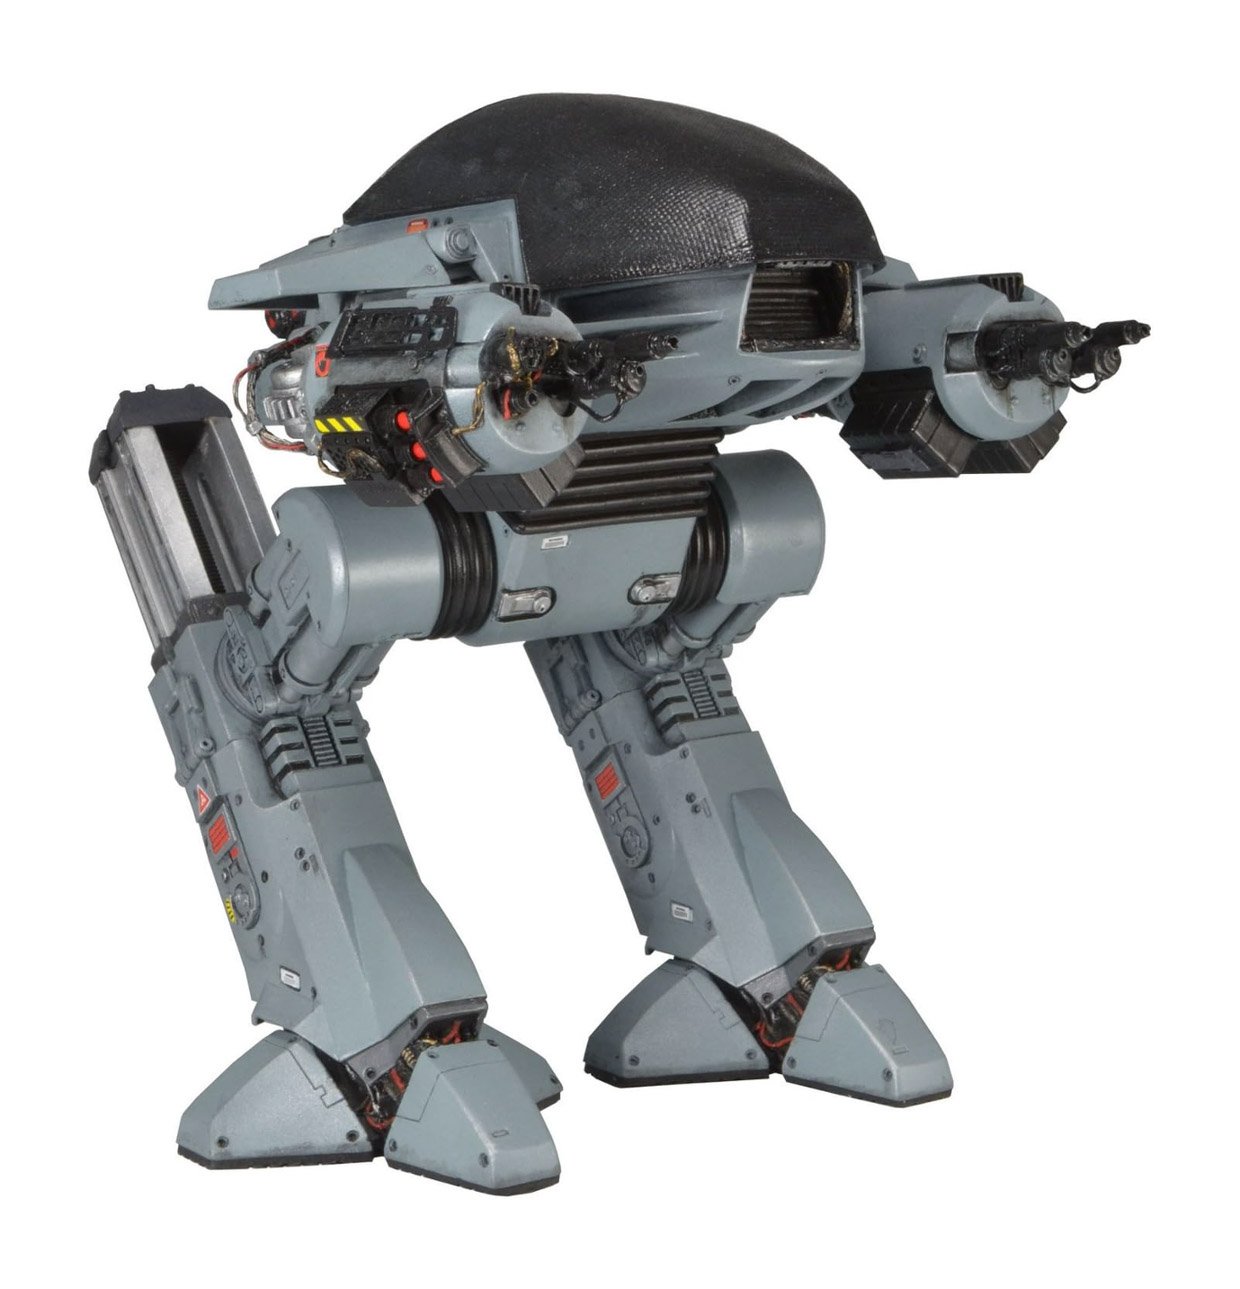 NECA RoboCop ED-209 Talking Action Figure